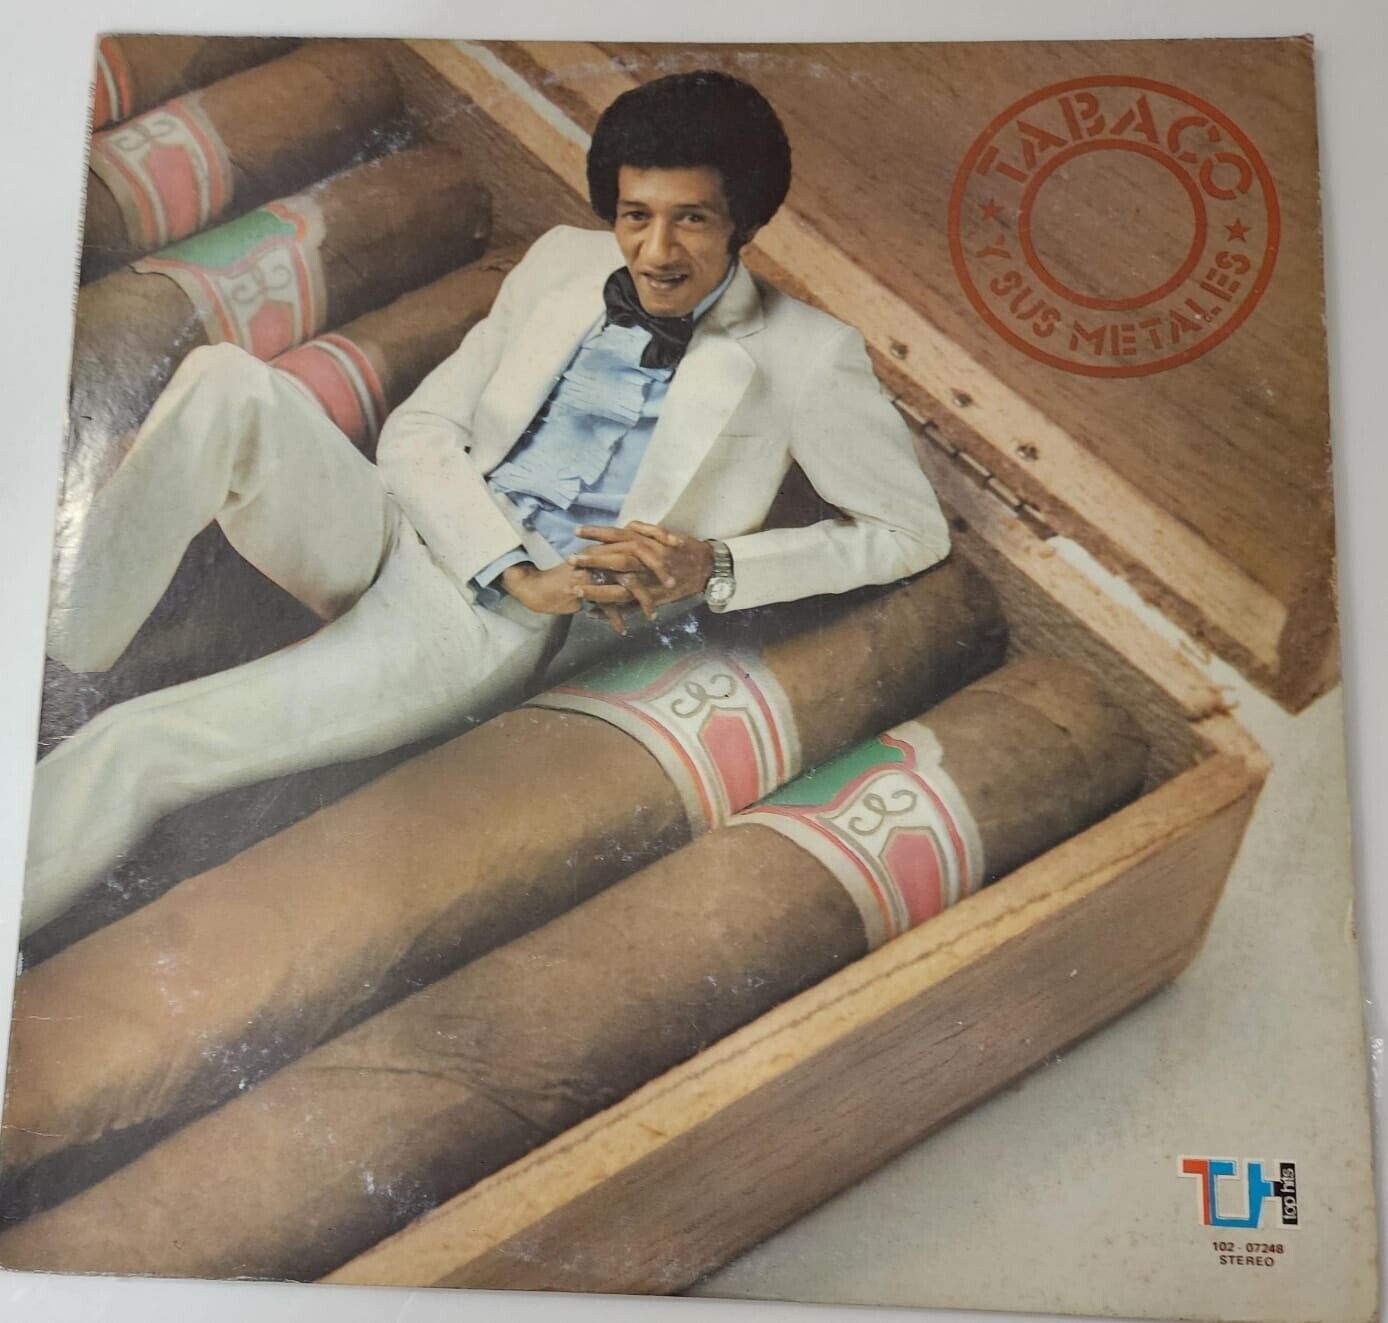 Tabaco Y Sus Metales Lp Vinyl Salsa Guaguanco 1981 Venezuela